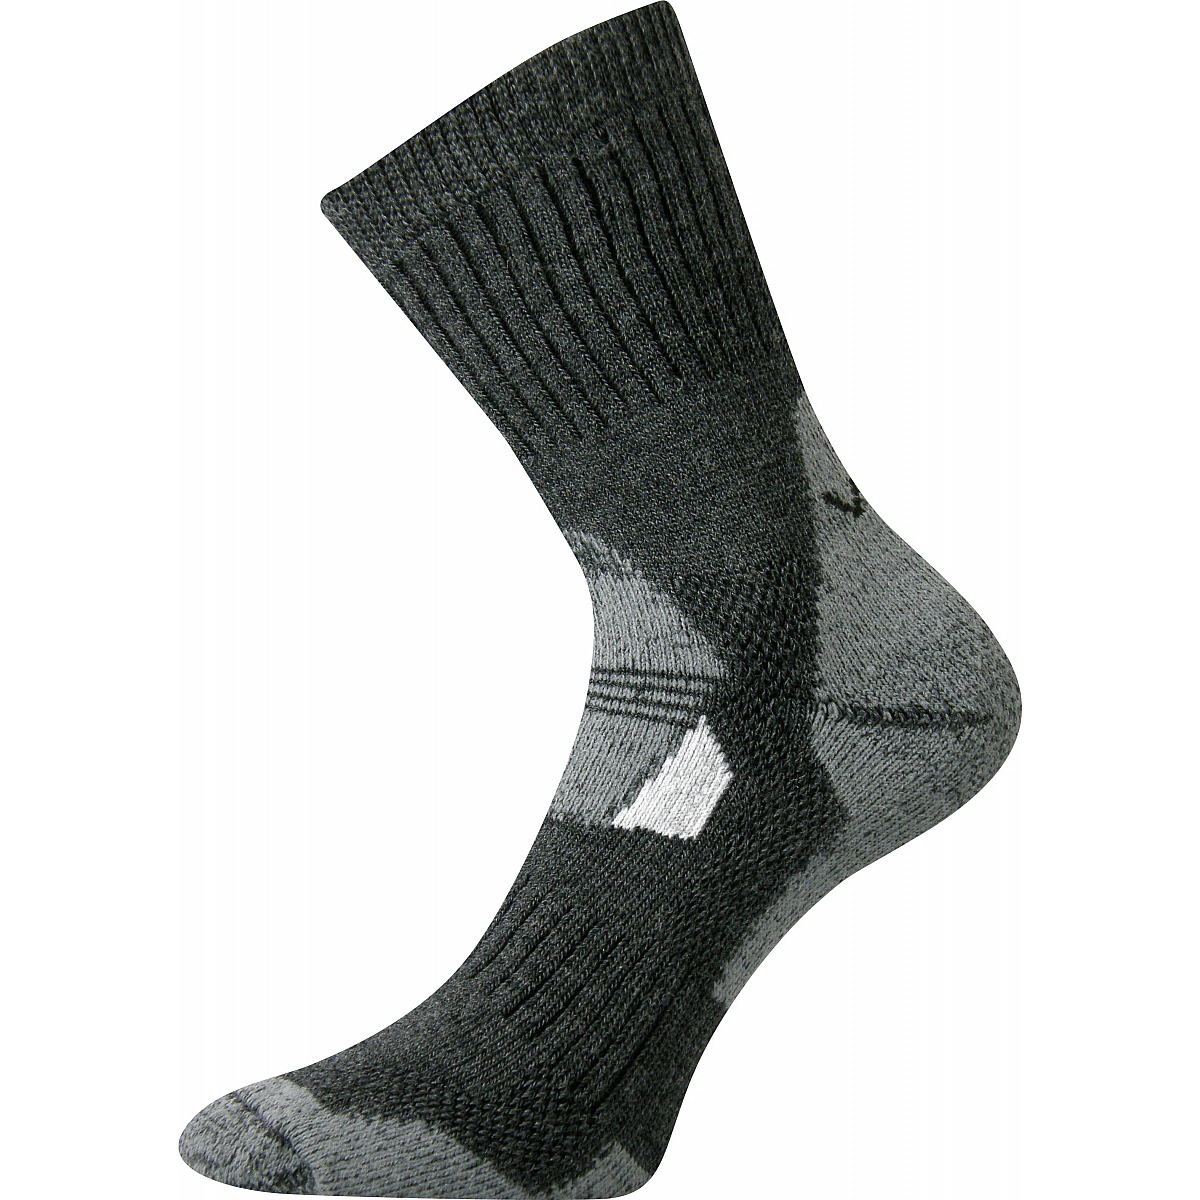 Extra teplé vlněné ponožky Voxx Stabil - tmavě šedé, 43-46